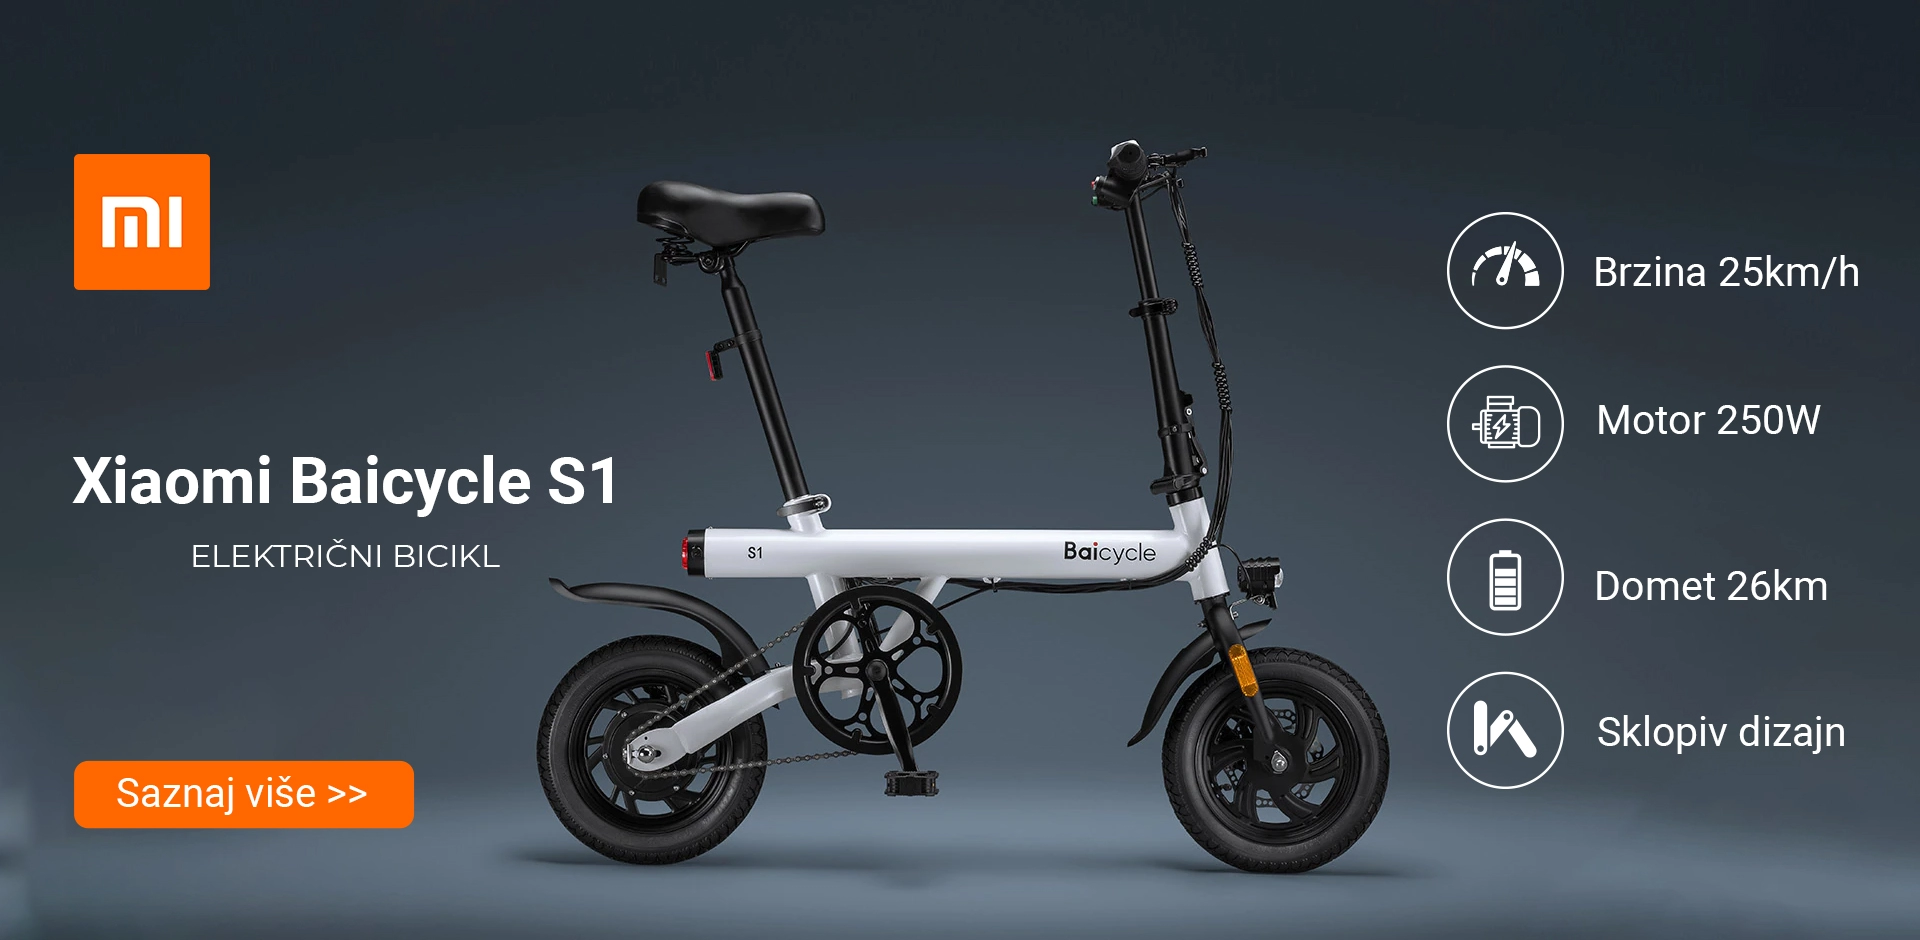  Xiaomi Baicycle S1 električni bicikl